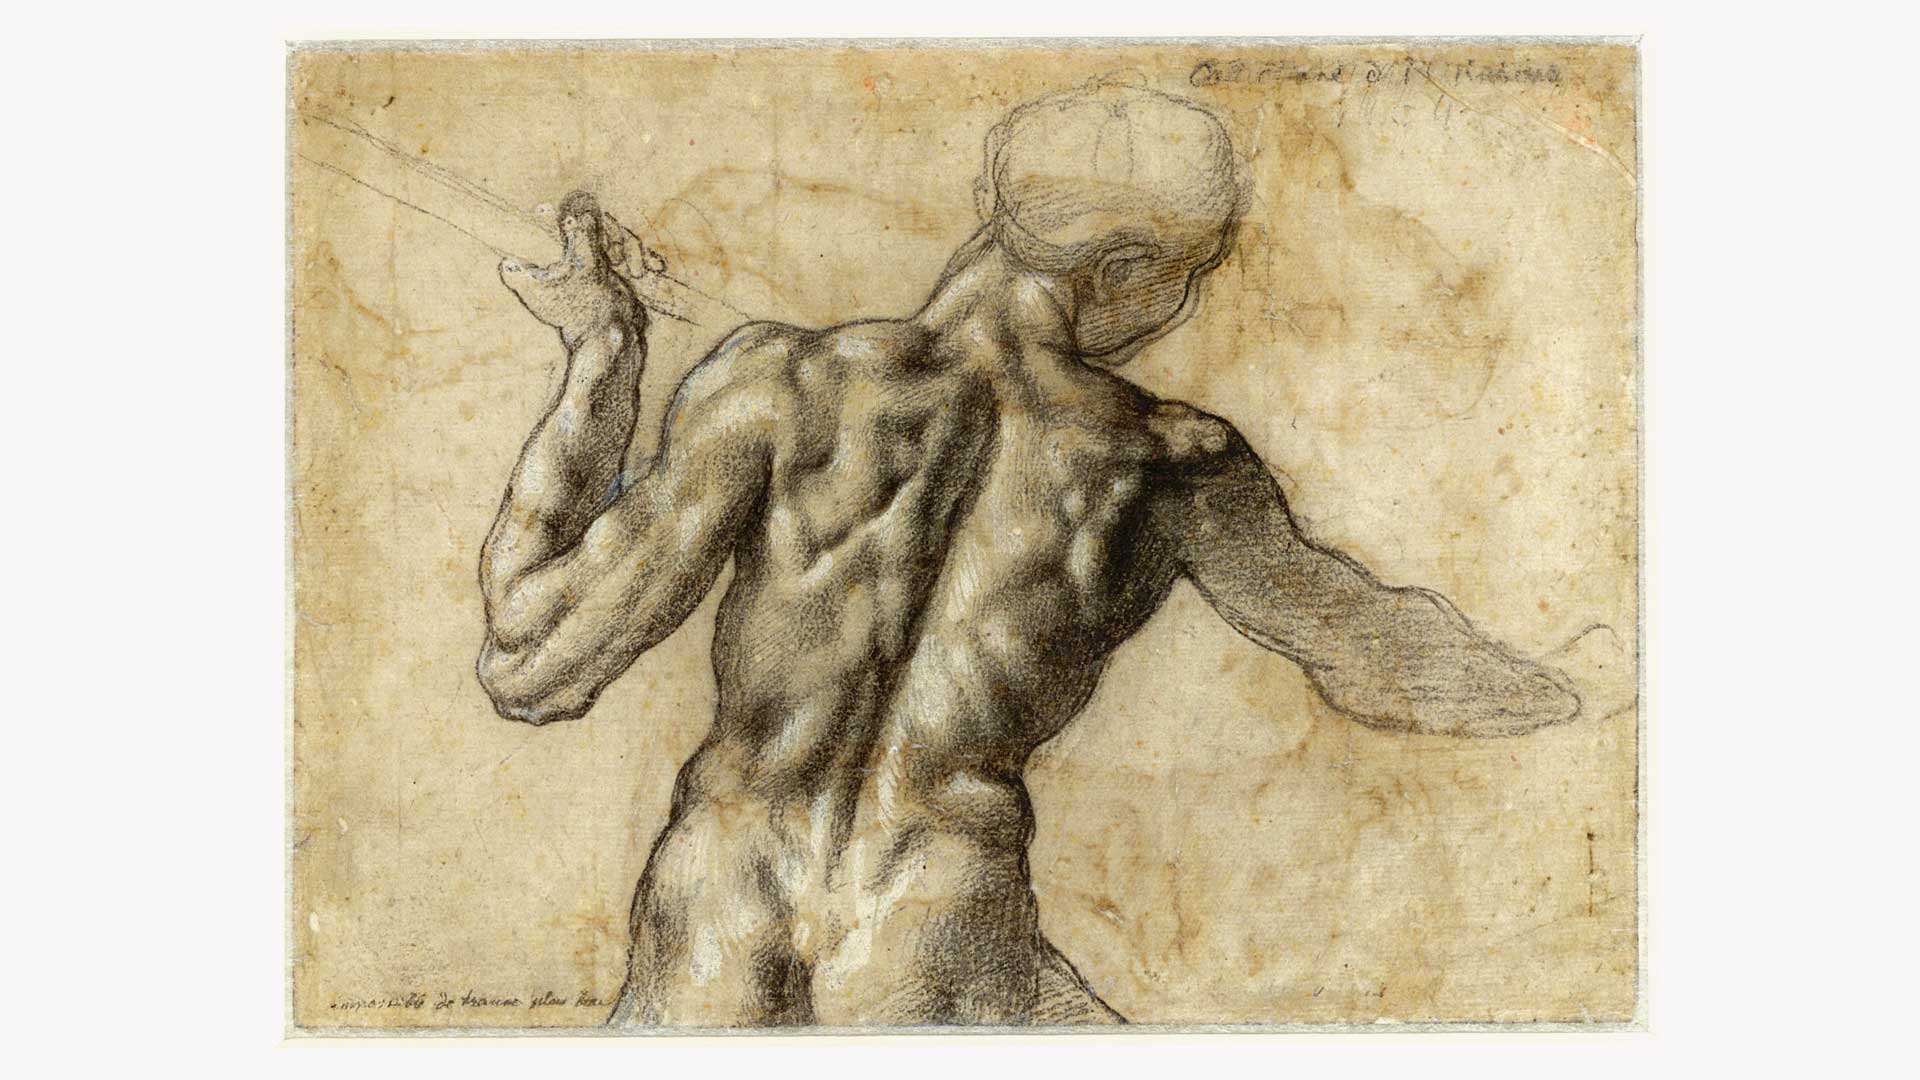 L'età di Michelangelo. I capolavori dell'Albertiniana 